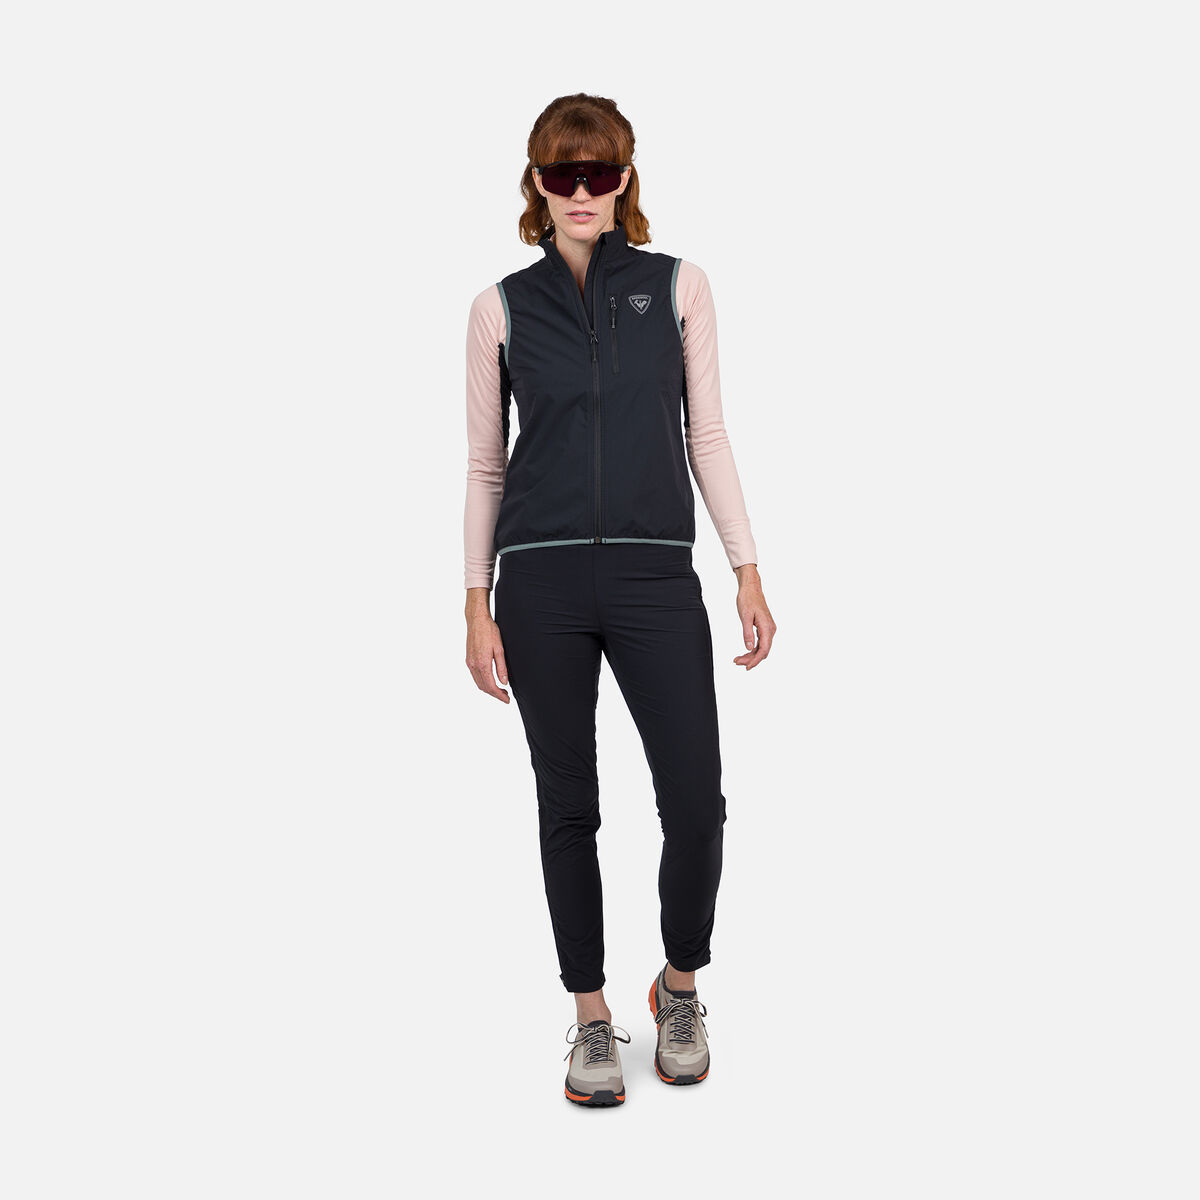 Rossignol Women's Active Versatile XC Ski Vest Black